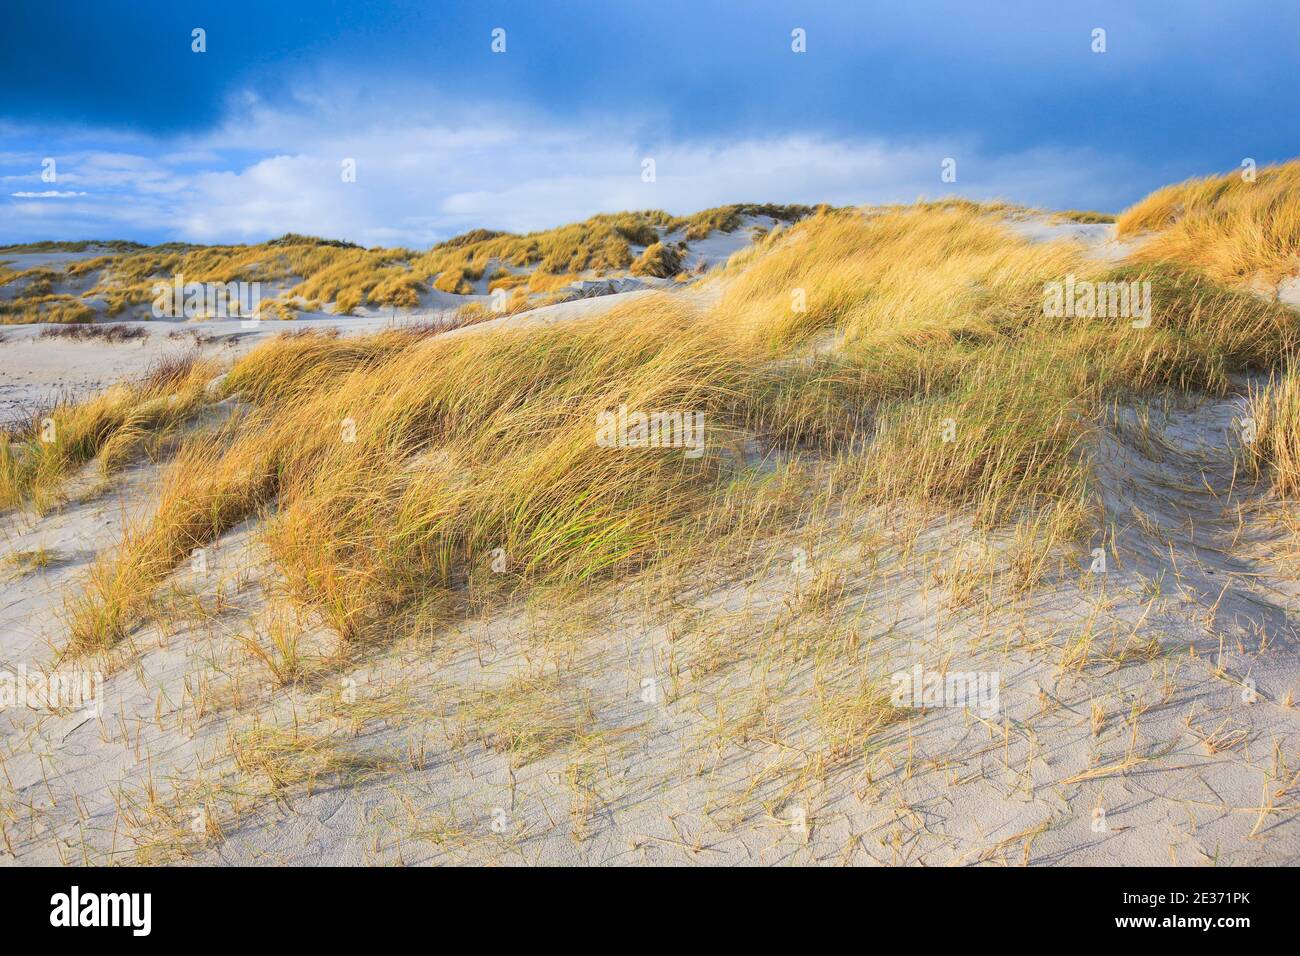 Dune de sable île dune, Helgoland, Allemagne Banque D'Images